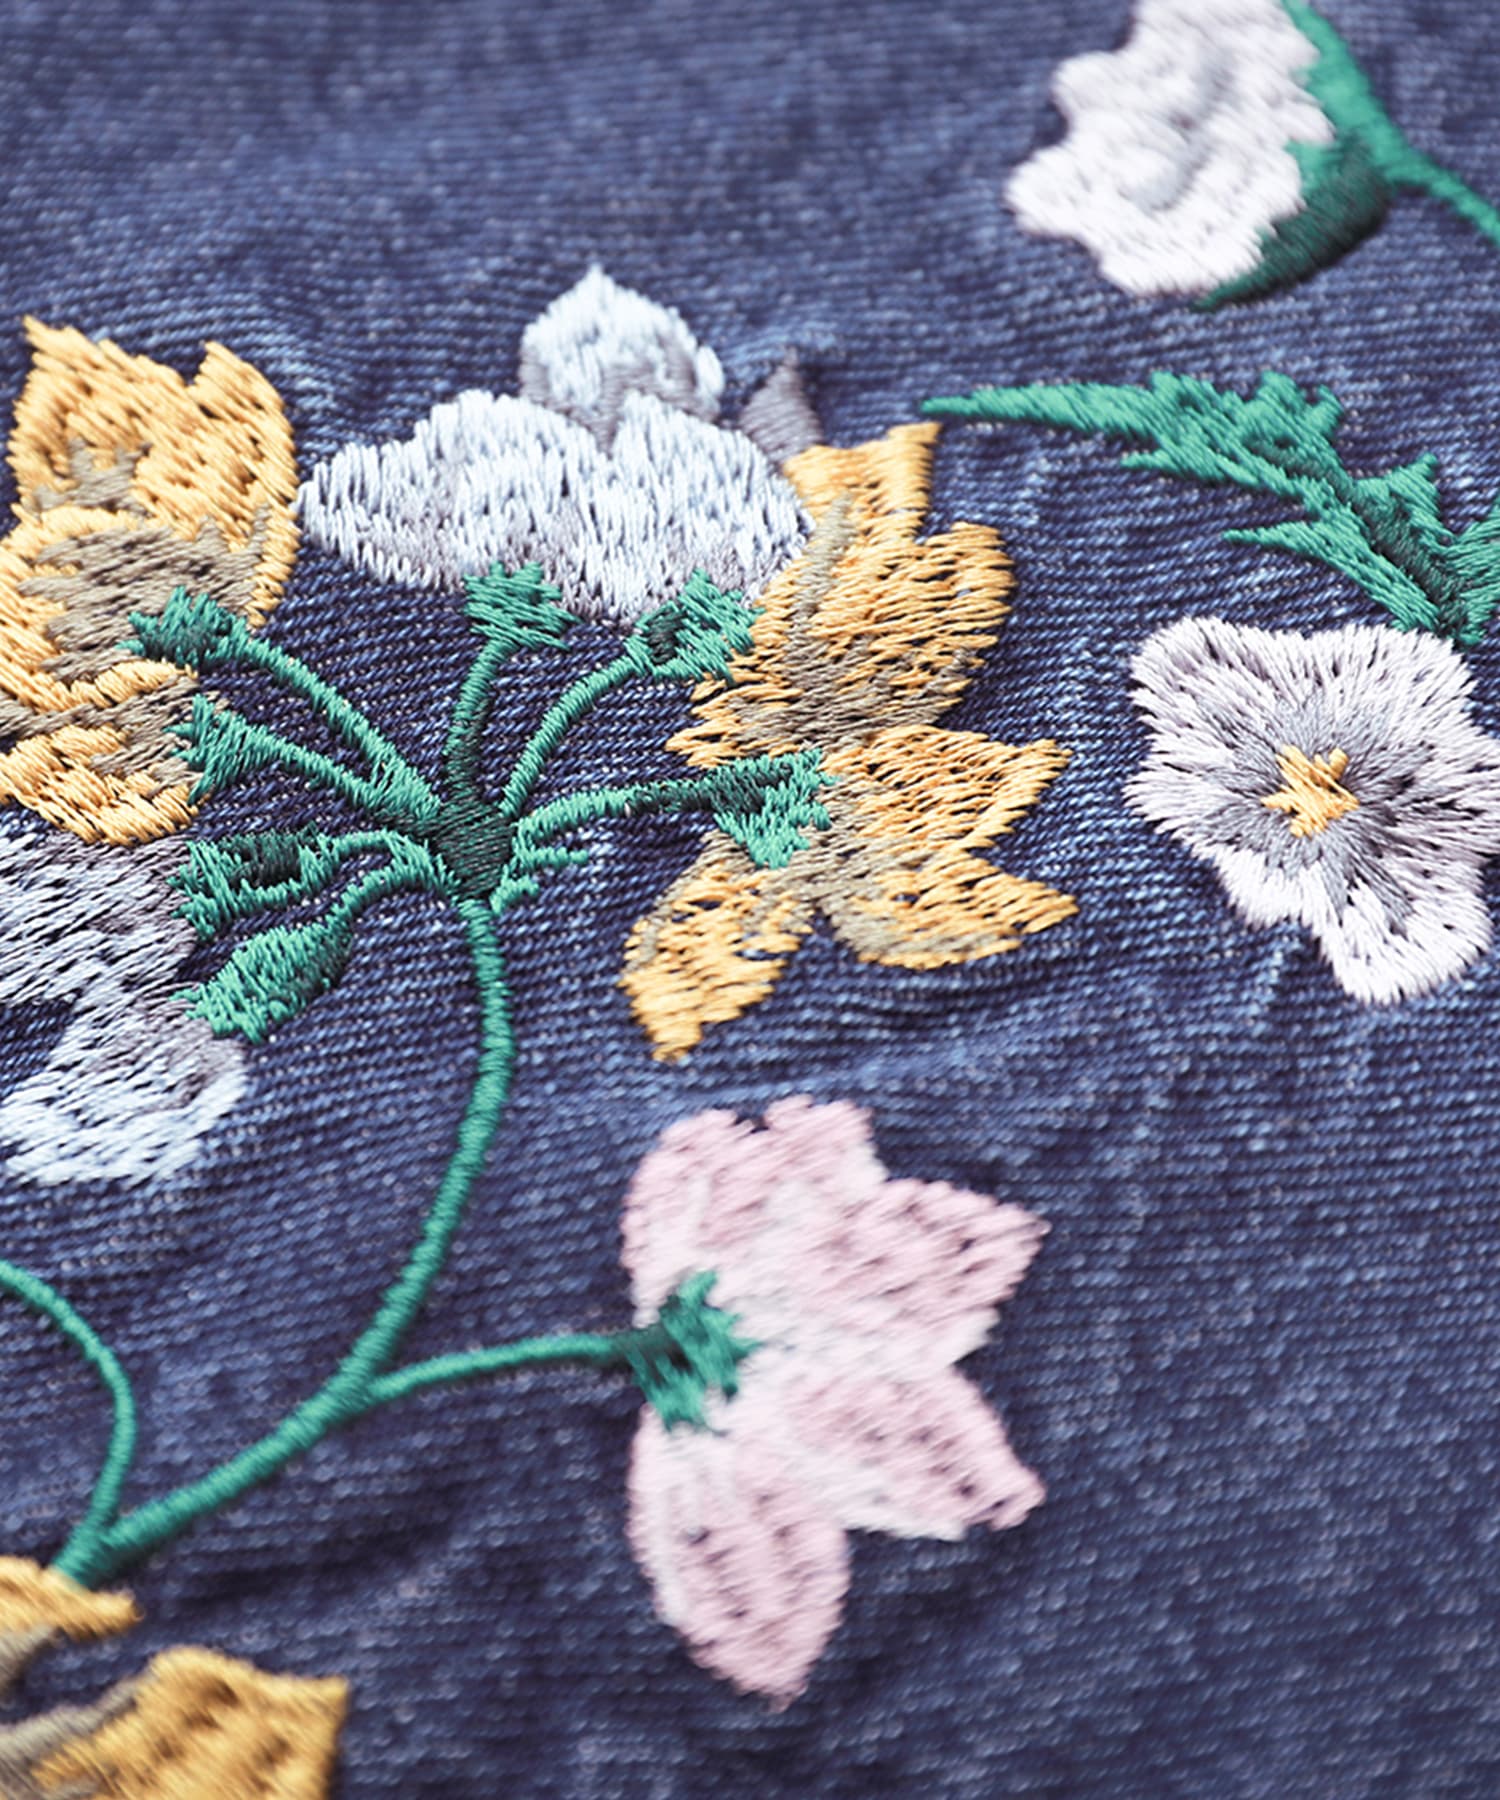 サイズアウトの為出品いたします小花柄刺繍  デニムスカート 120cm